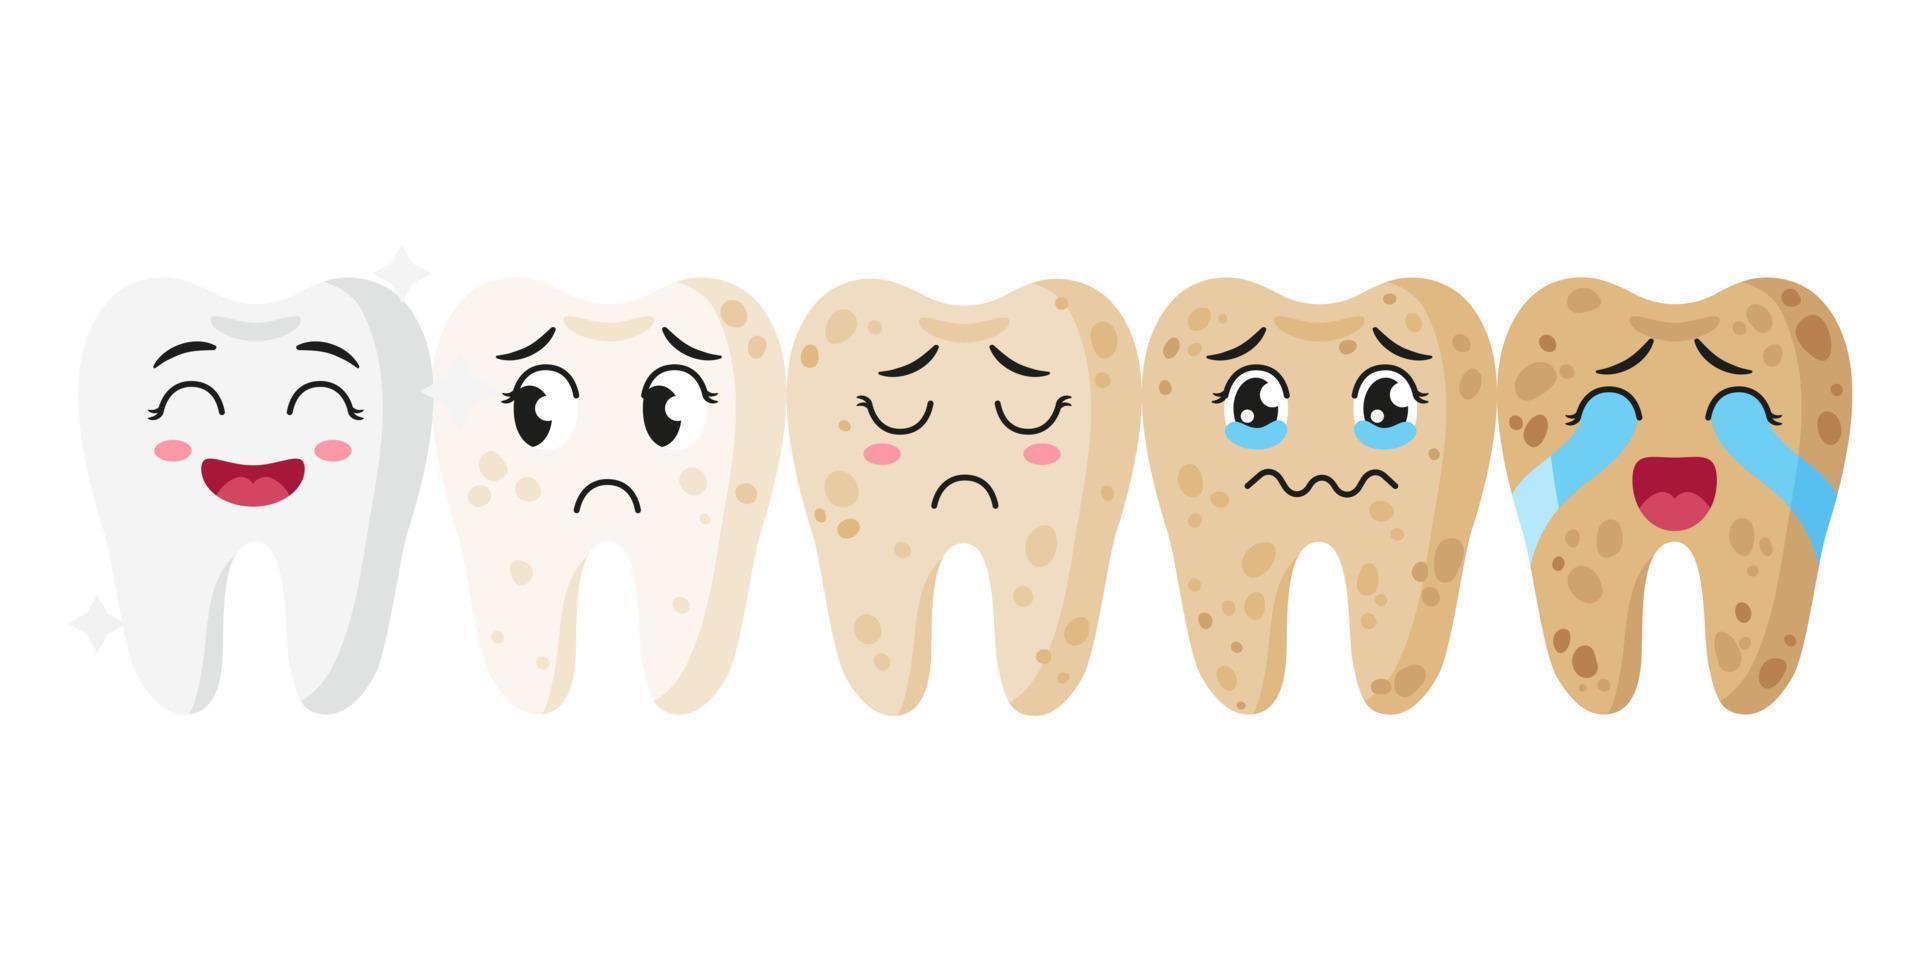 vector schattige stripfiguren van tanden met verschillende emoties en stadia van de ziekte.